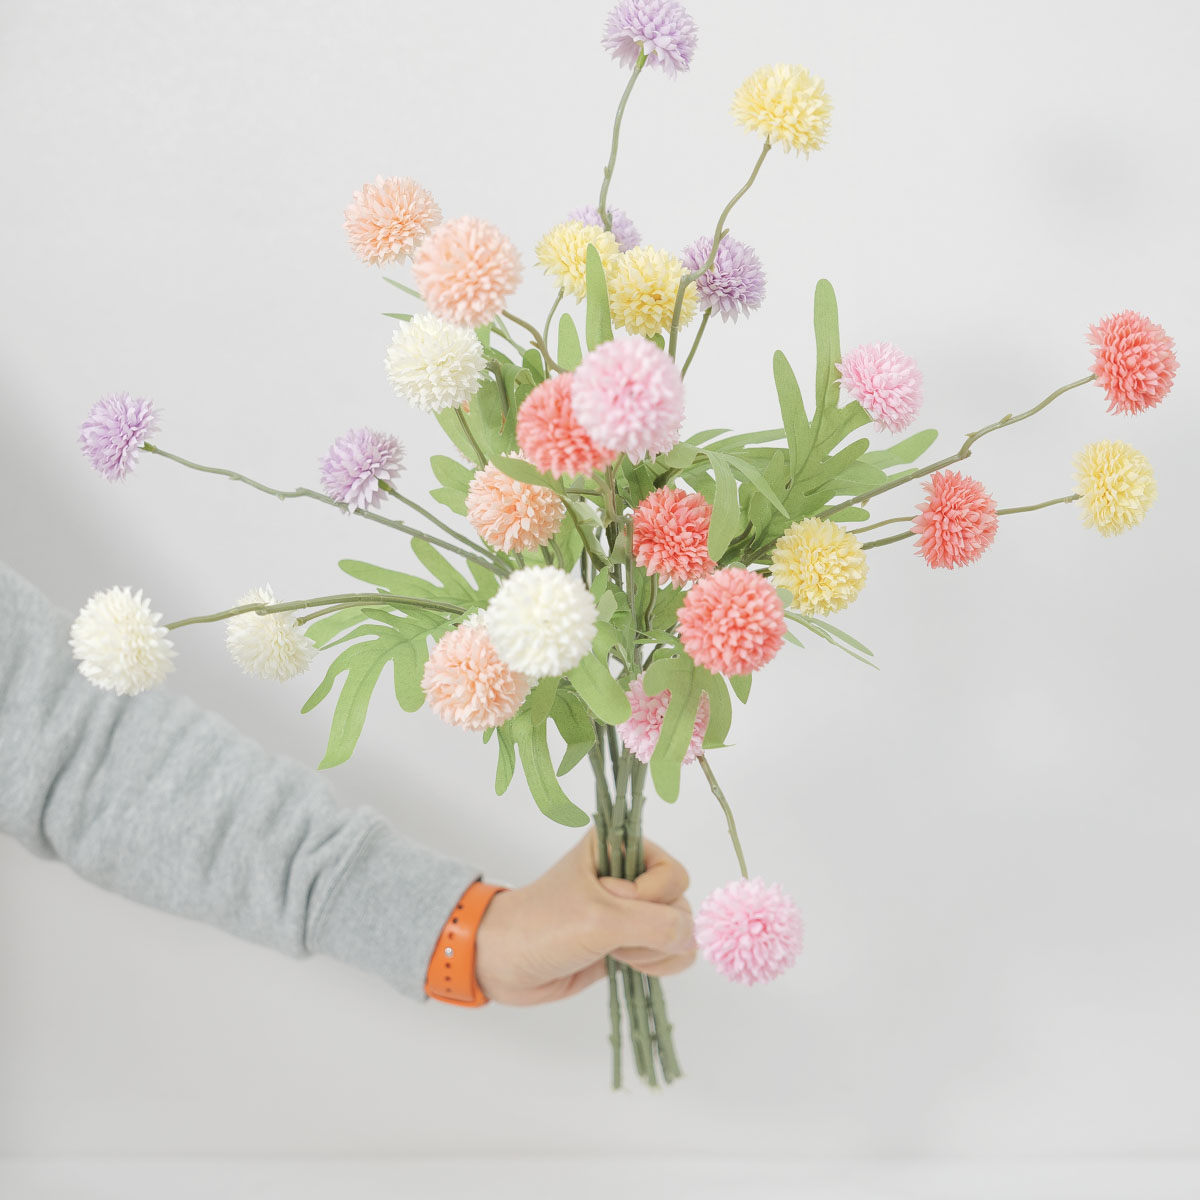 실크플라워 폼폼꽃 조화 미니 알리움 꽃 가지 52cm, 퐁퐁 소국 봄조화 상품 다중이미지 썸네일